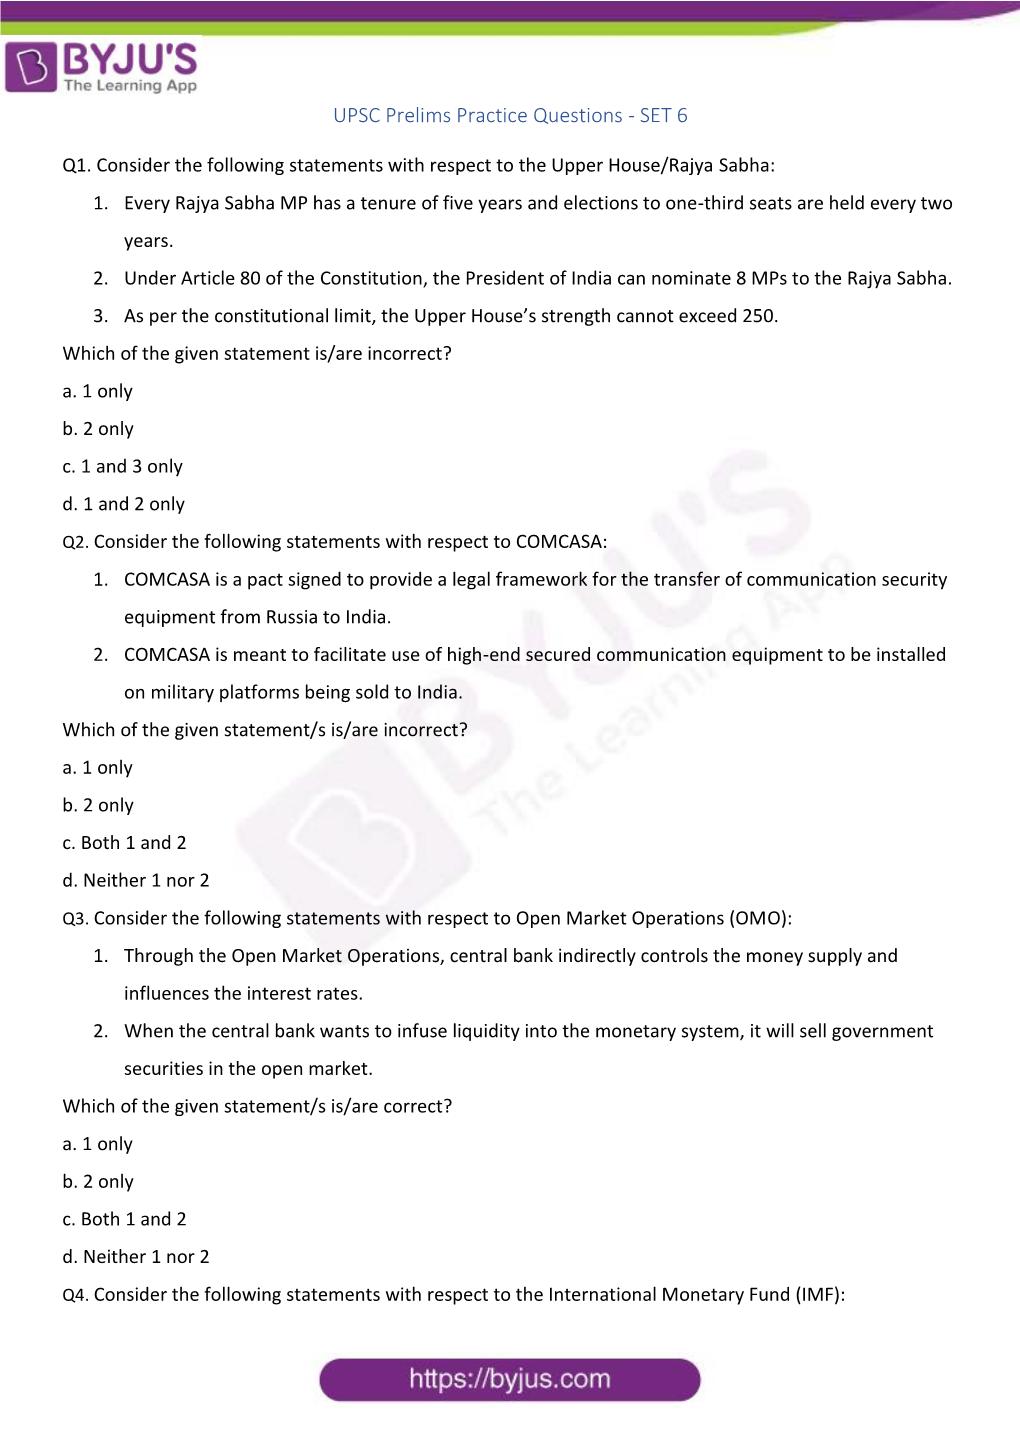 UPSC Prelims Practice Questions - SET 6